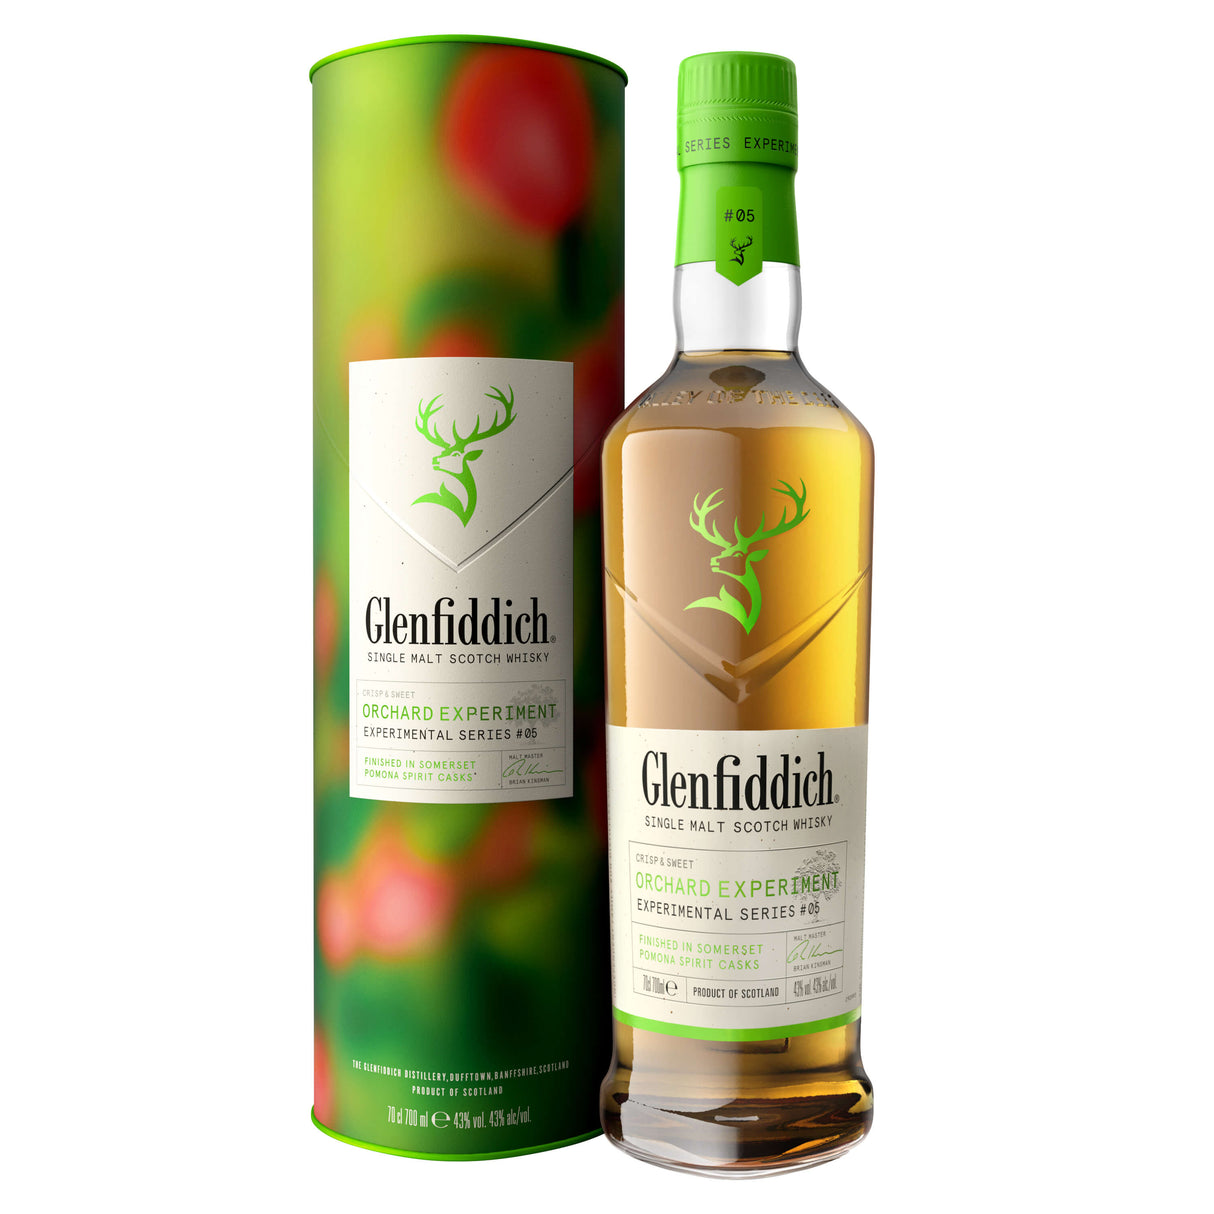 glenfiddich orchard single malt scotch whisky